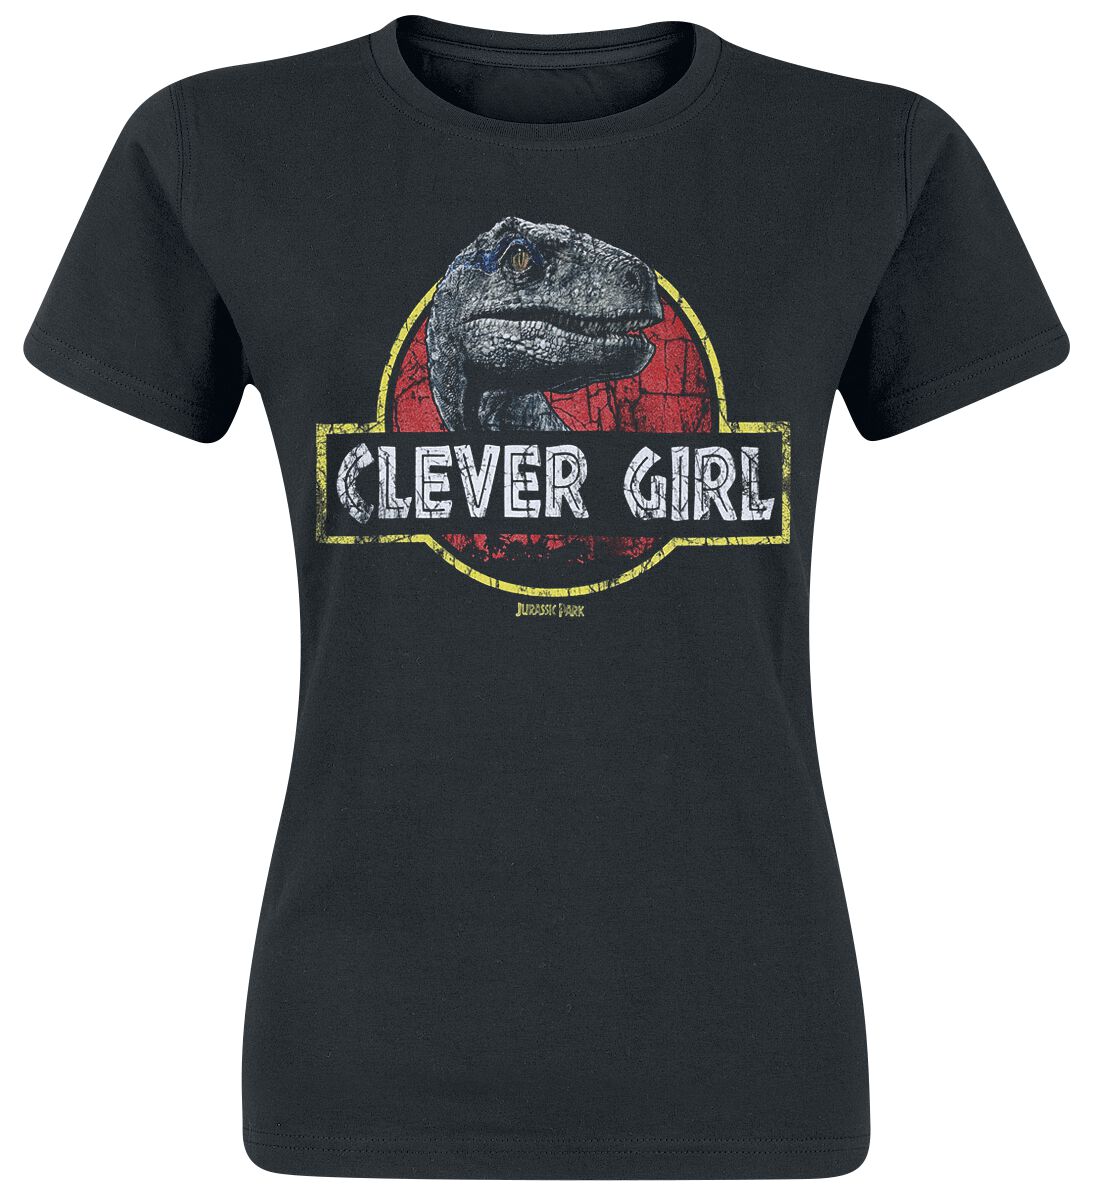 Jurassic Park T-Shirt - Clever Girl - S bis XL - für Damen - Größe M - schwarz  - Lizenzierter Fanartikel von Jurassic Park